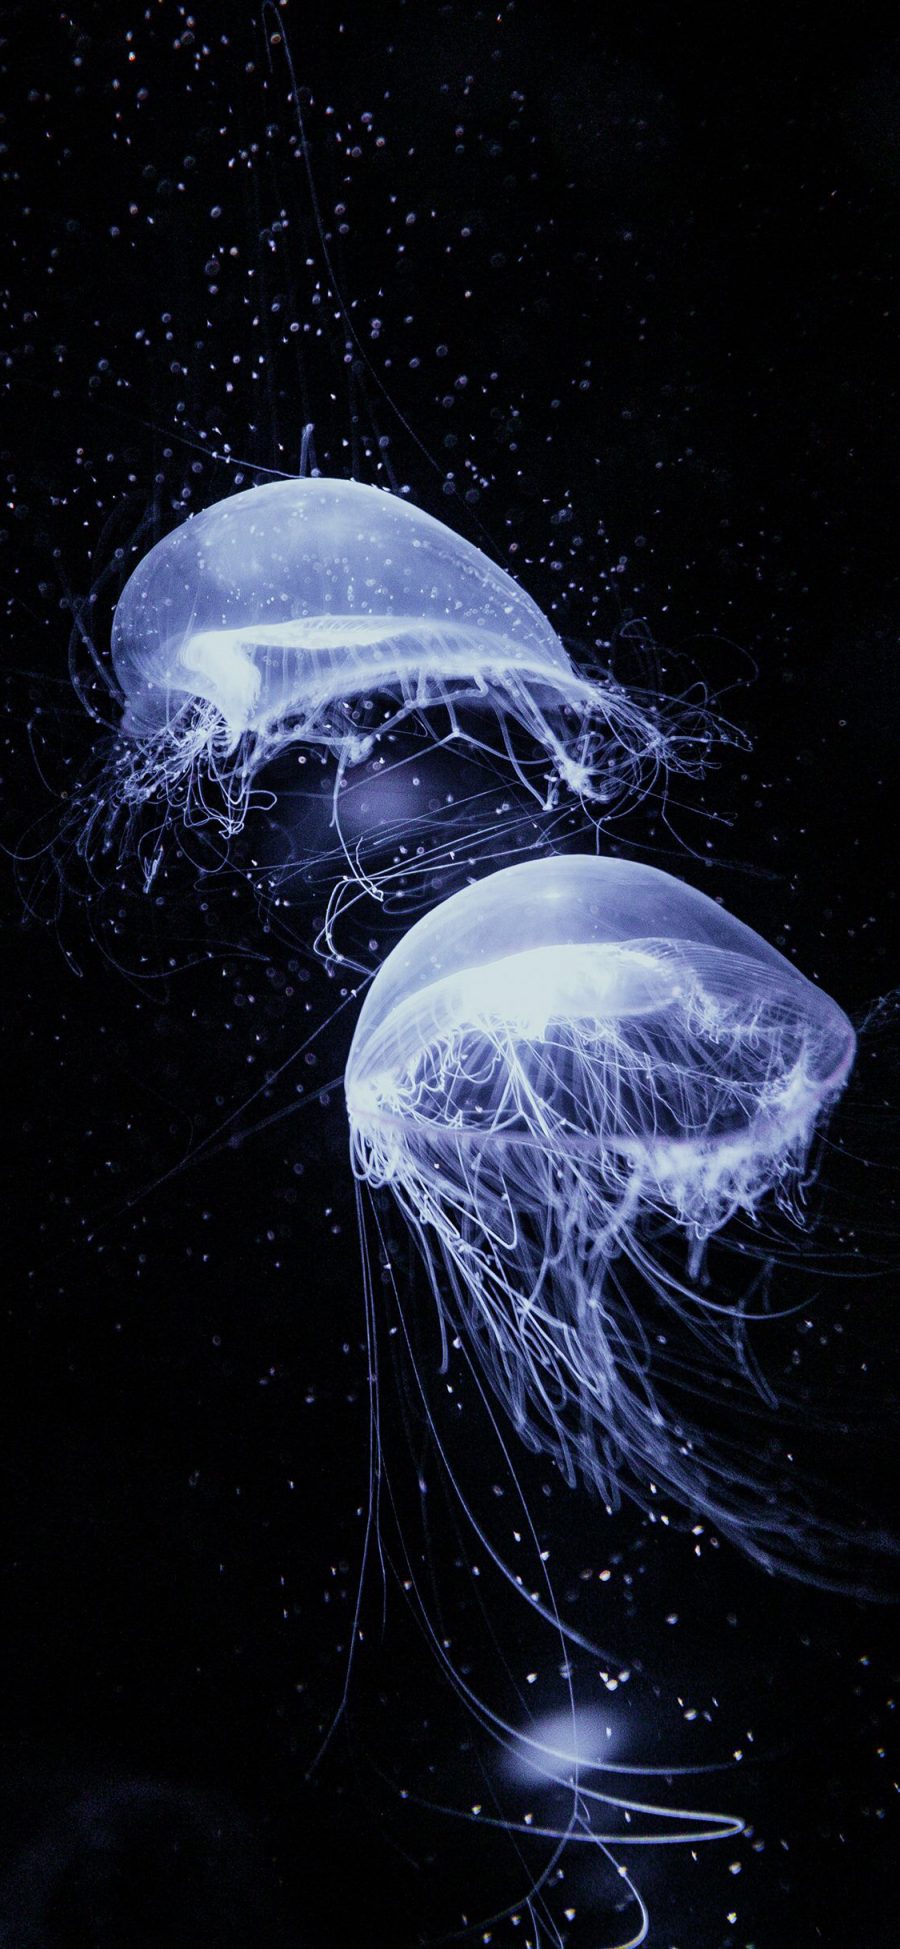 [2436×1125]水母 海洋生物 透明 黑暗 游动 苹果手机壁纸图片